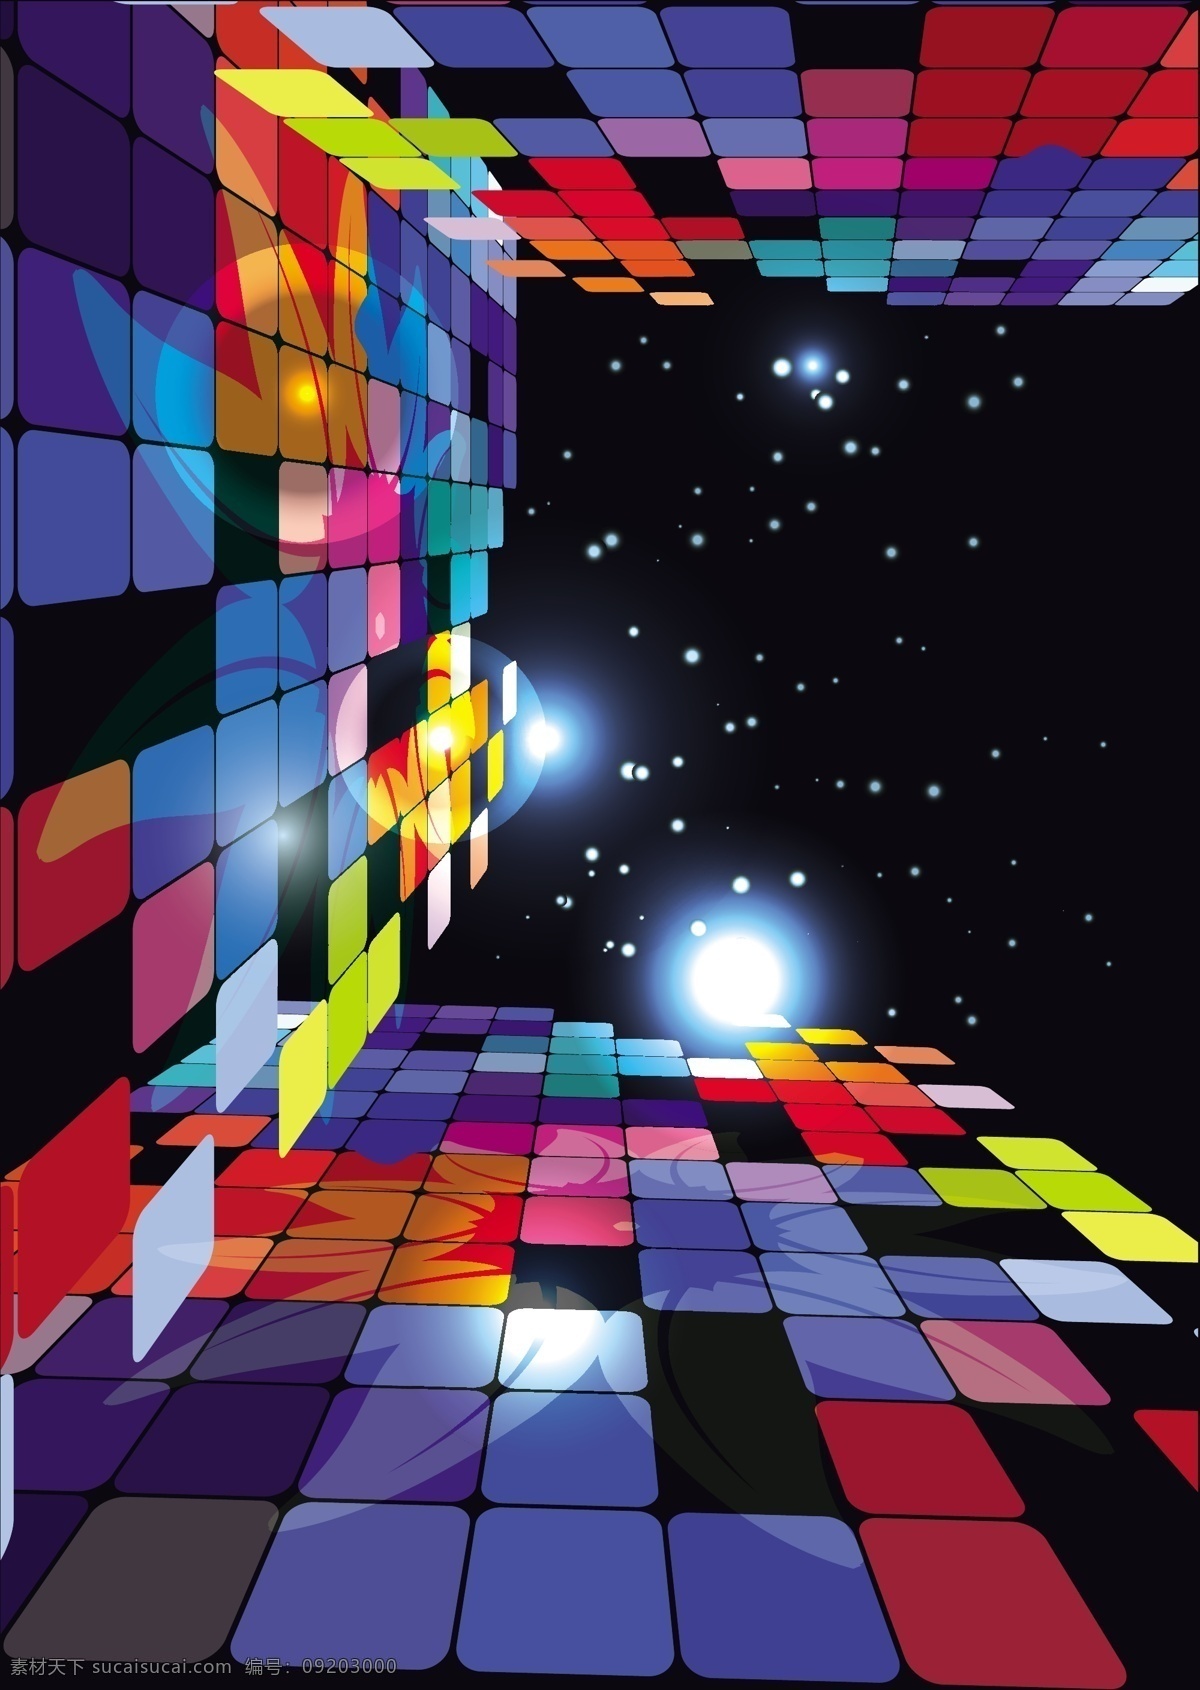 款 彩色 魔方 矢量 方块 立体方块 三维立体空间 空间透视感 电闪雷击 酷炫魔方 矢量图 其他矢量图